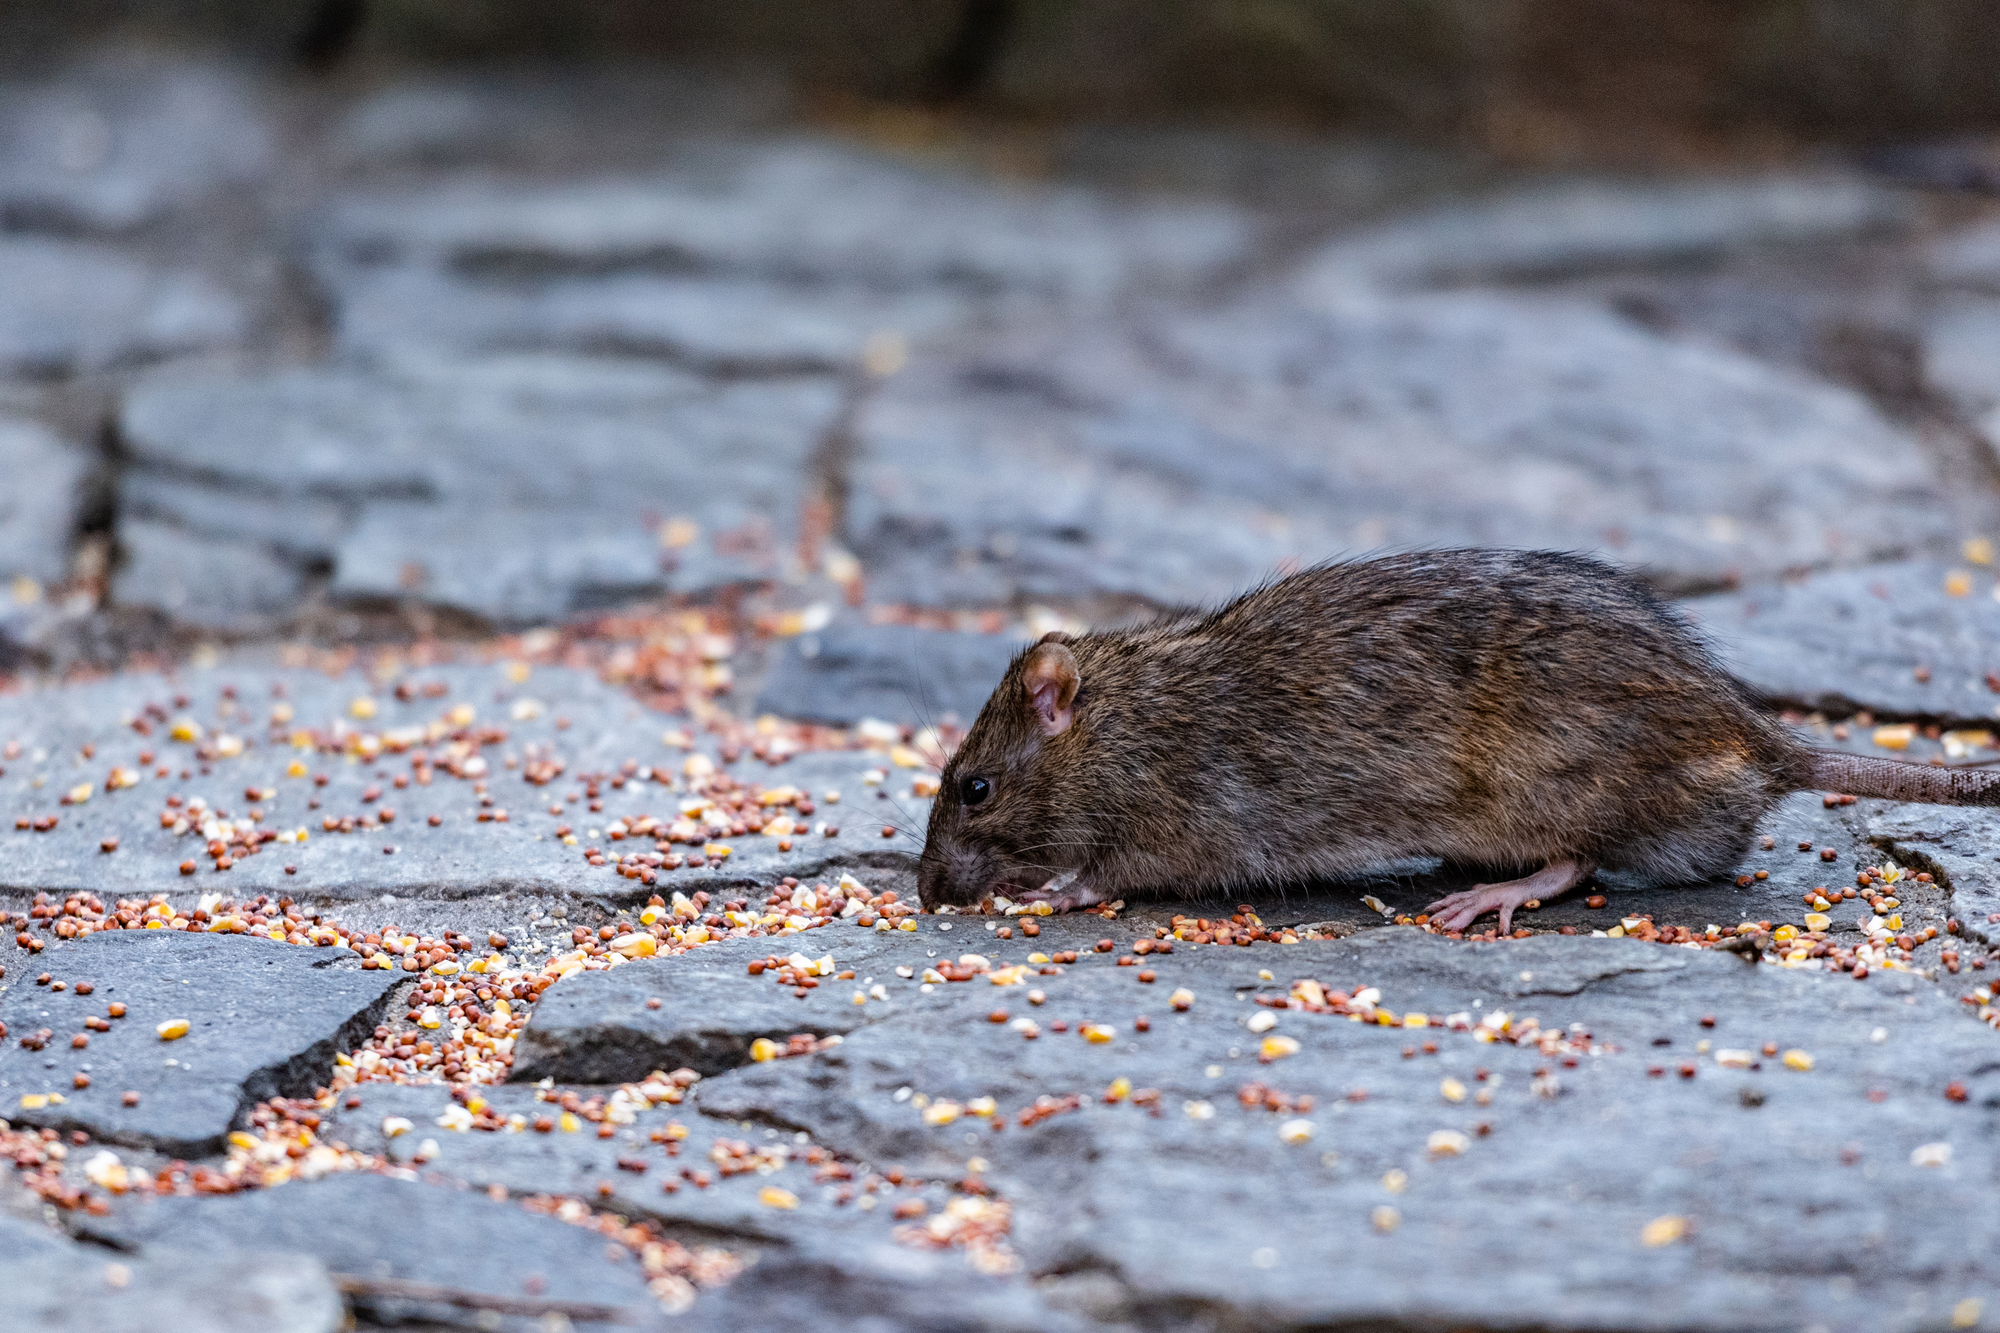 a rat eating fallen bird seeds